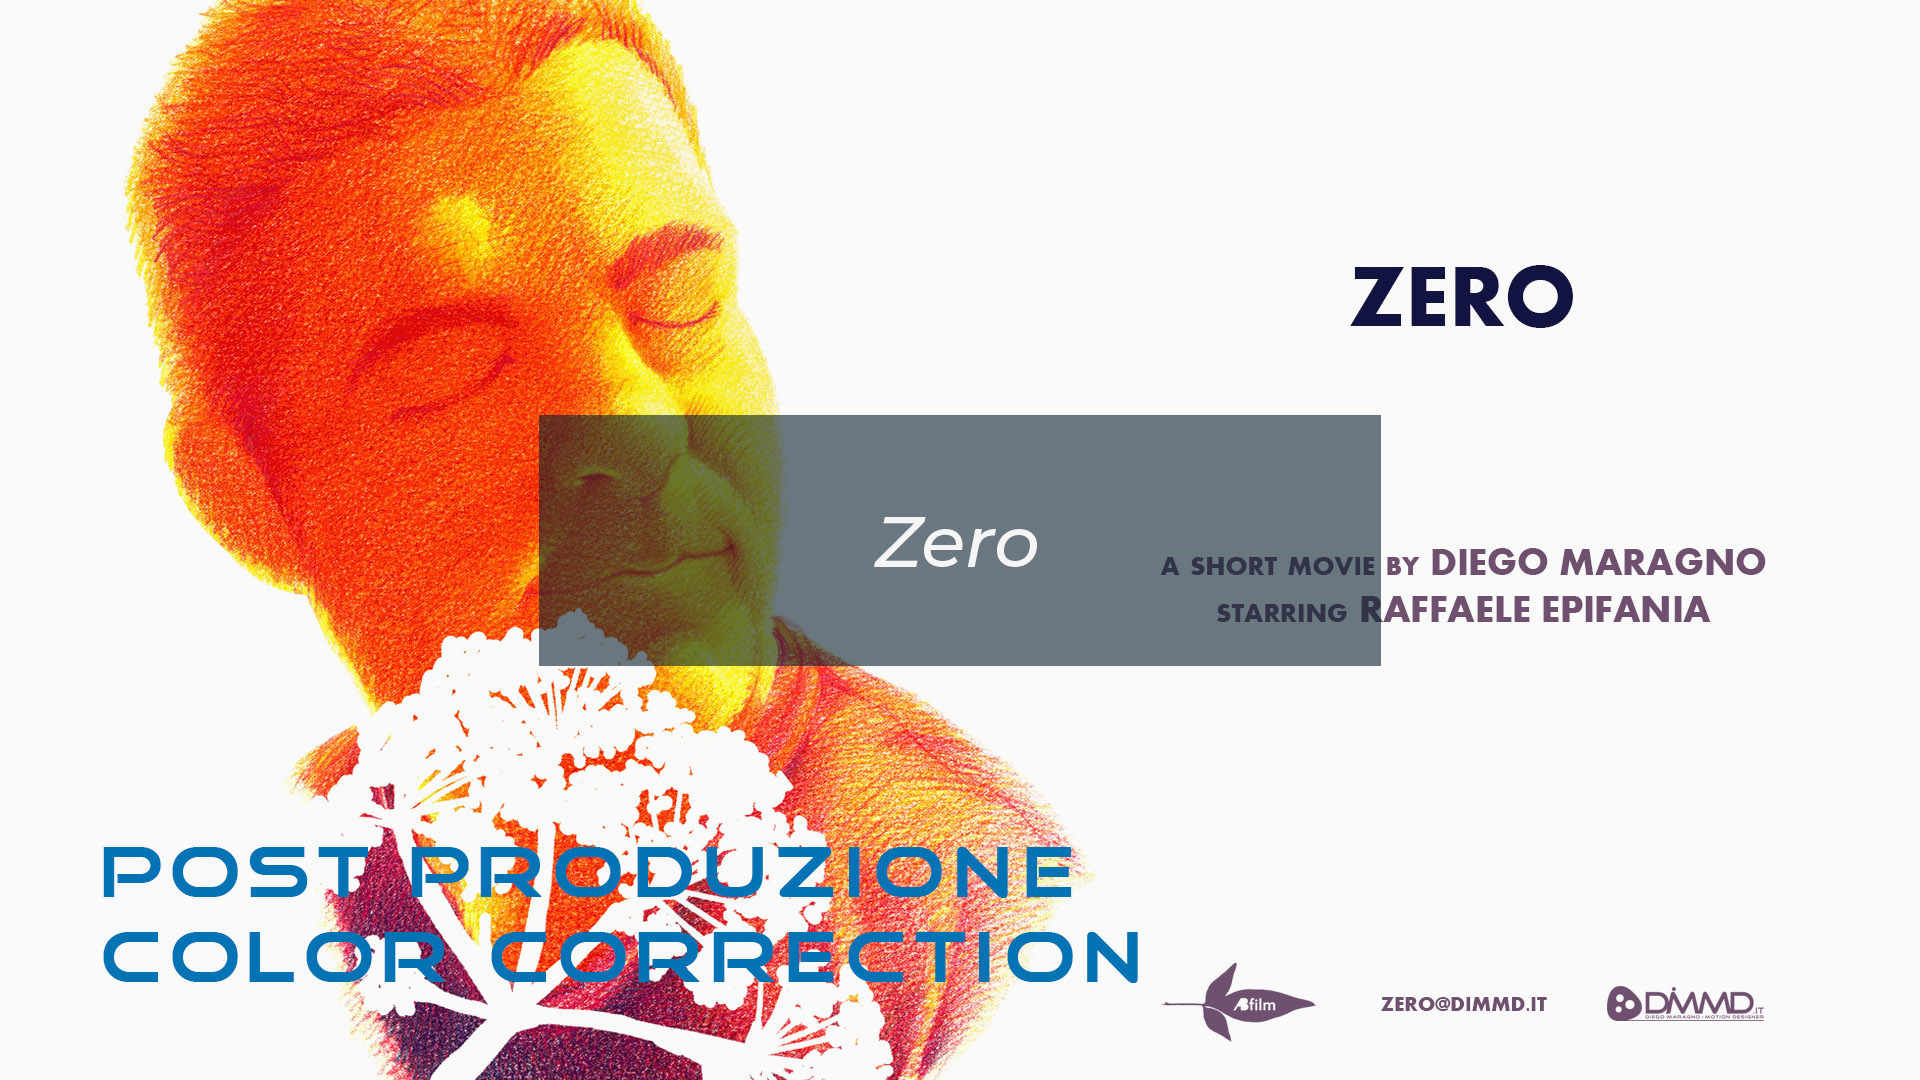 Zero Color Correction e Post Produzione by DiMMD